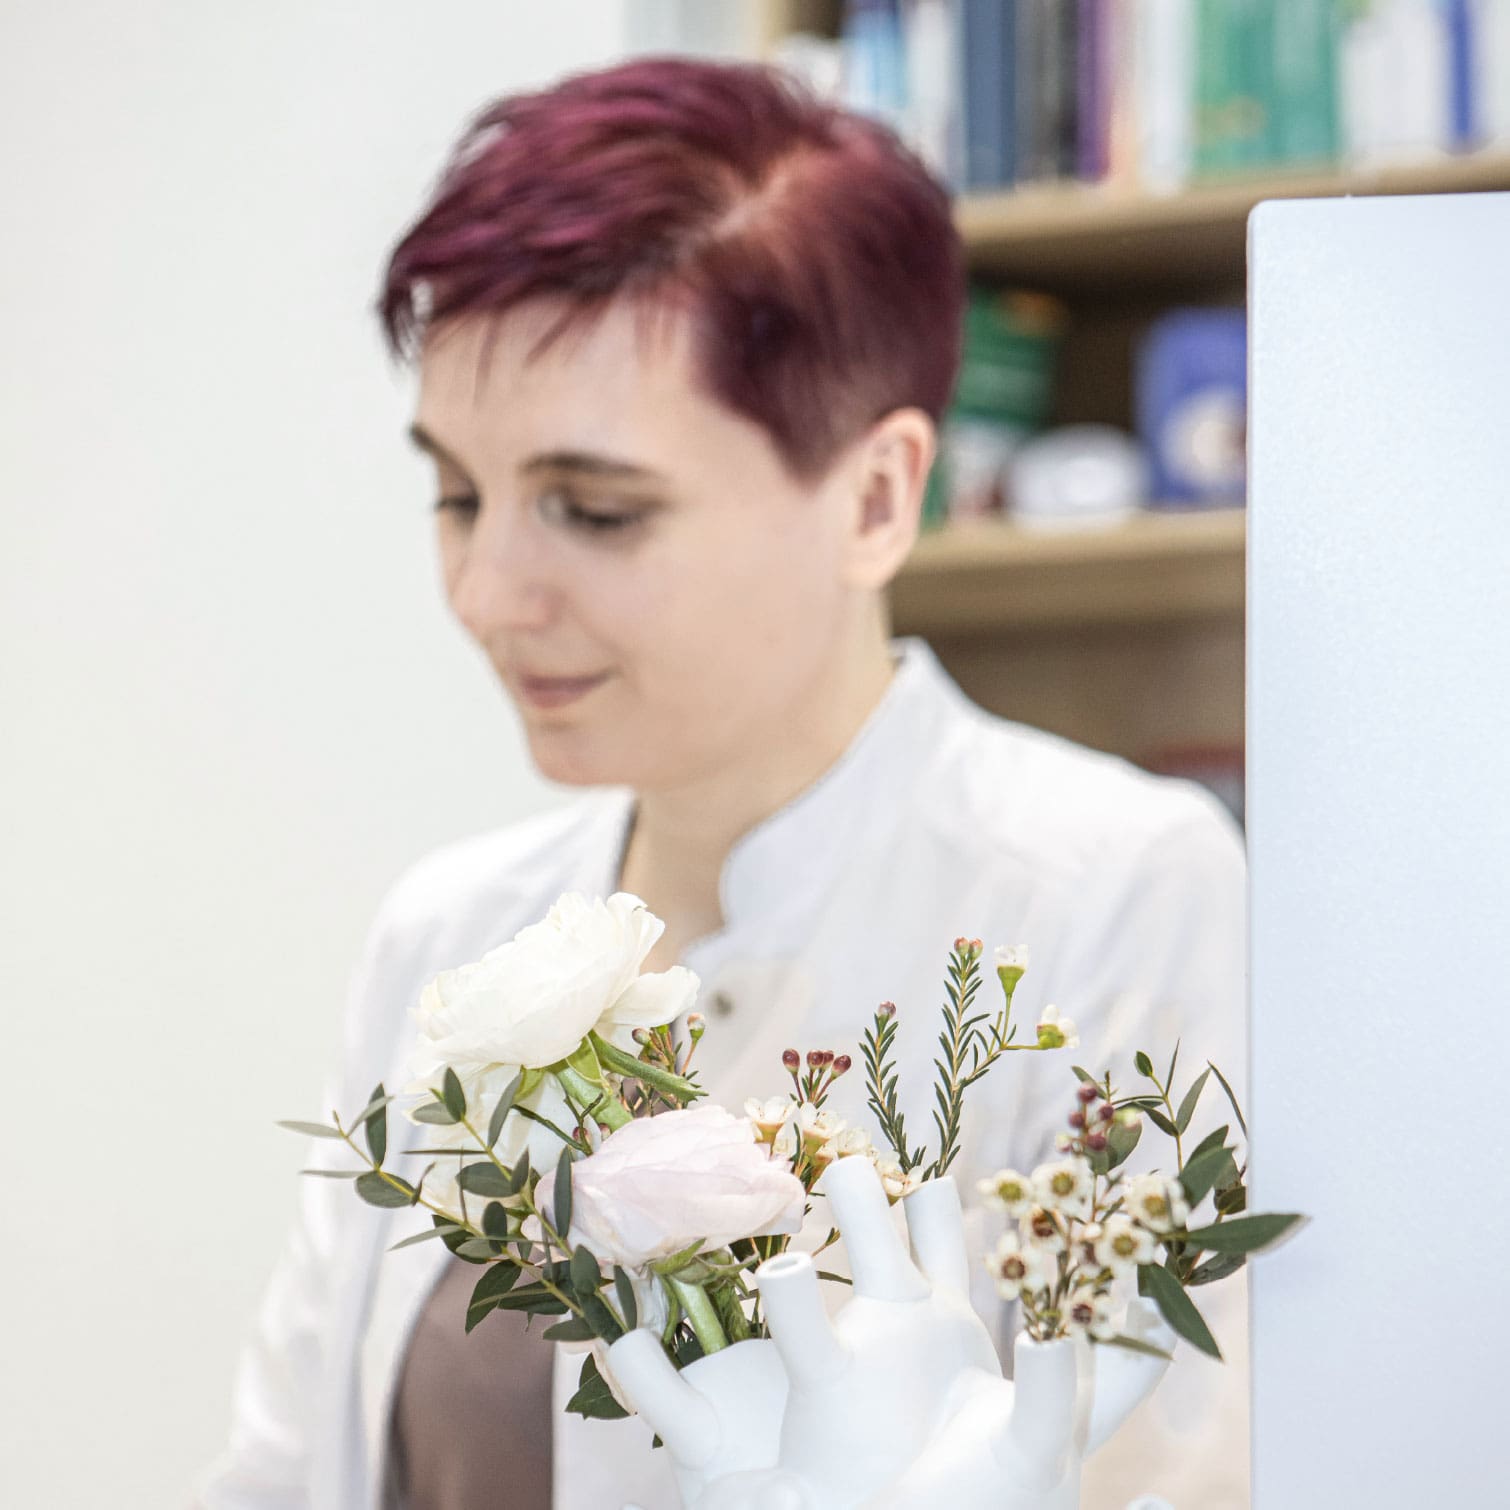 Dr. Dissauer, eine Dame im Arztkittel mit rötlich gefärbten Haaren, im Vordergrund eine Blumenvase